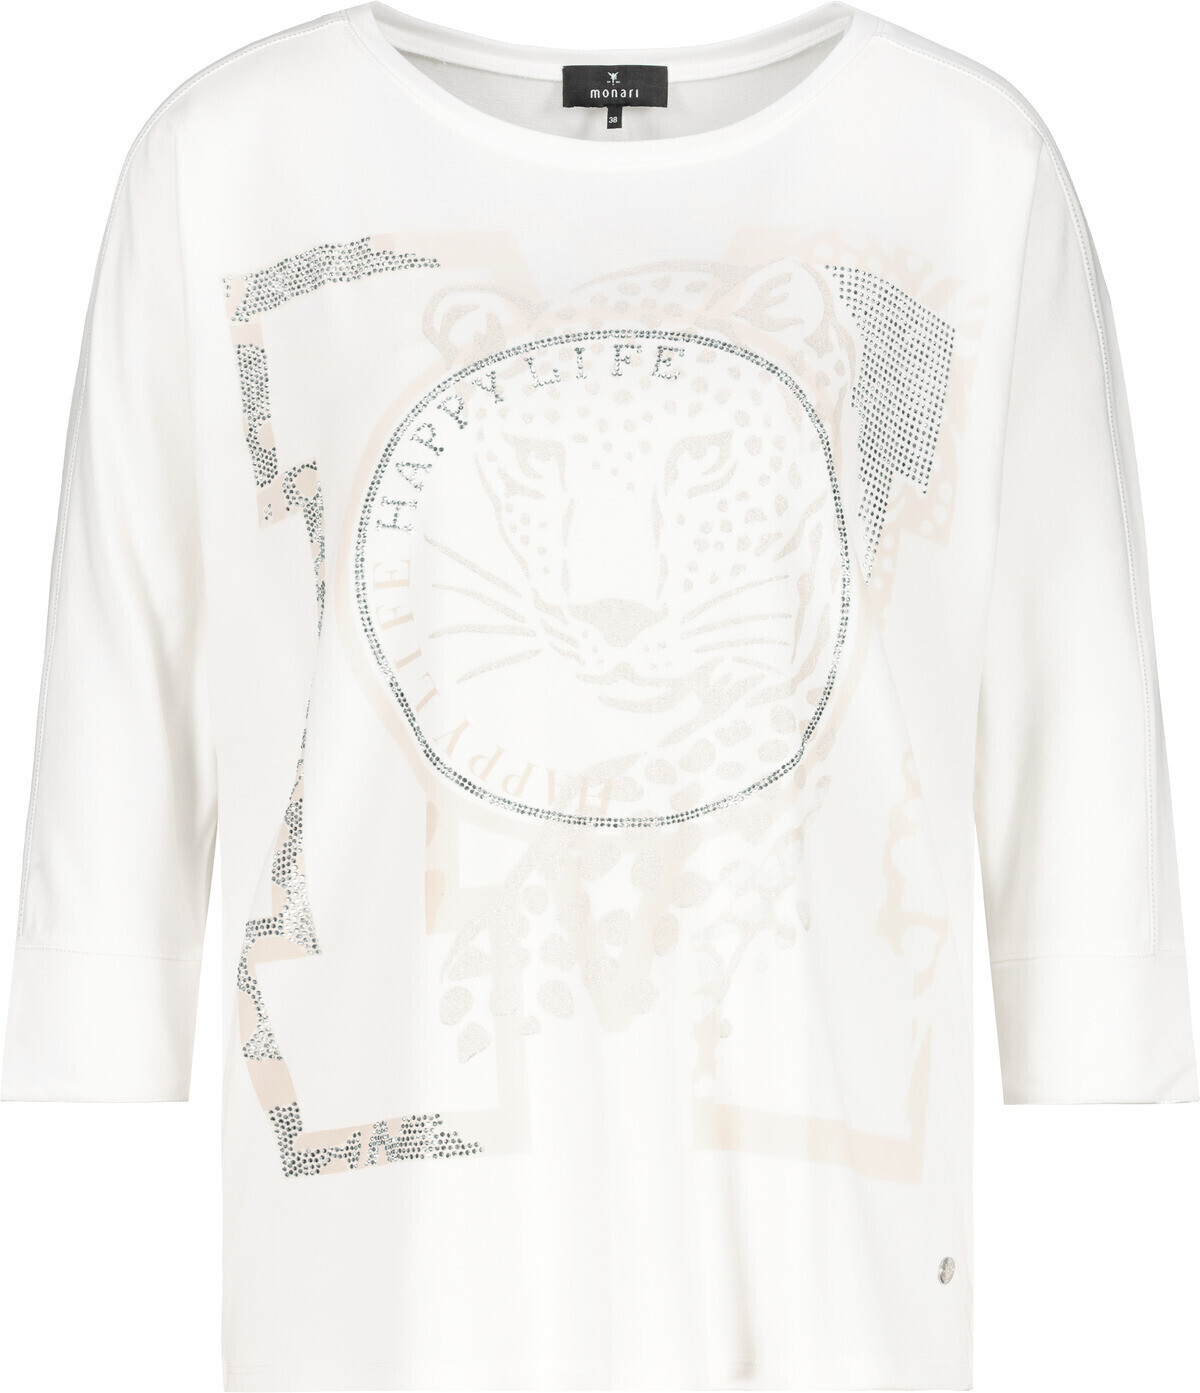 Monari Shirt mit Panther Print 49,99 Preisvergleich bei (806970) € ab off-white 